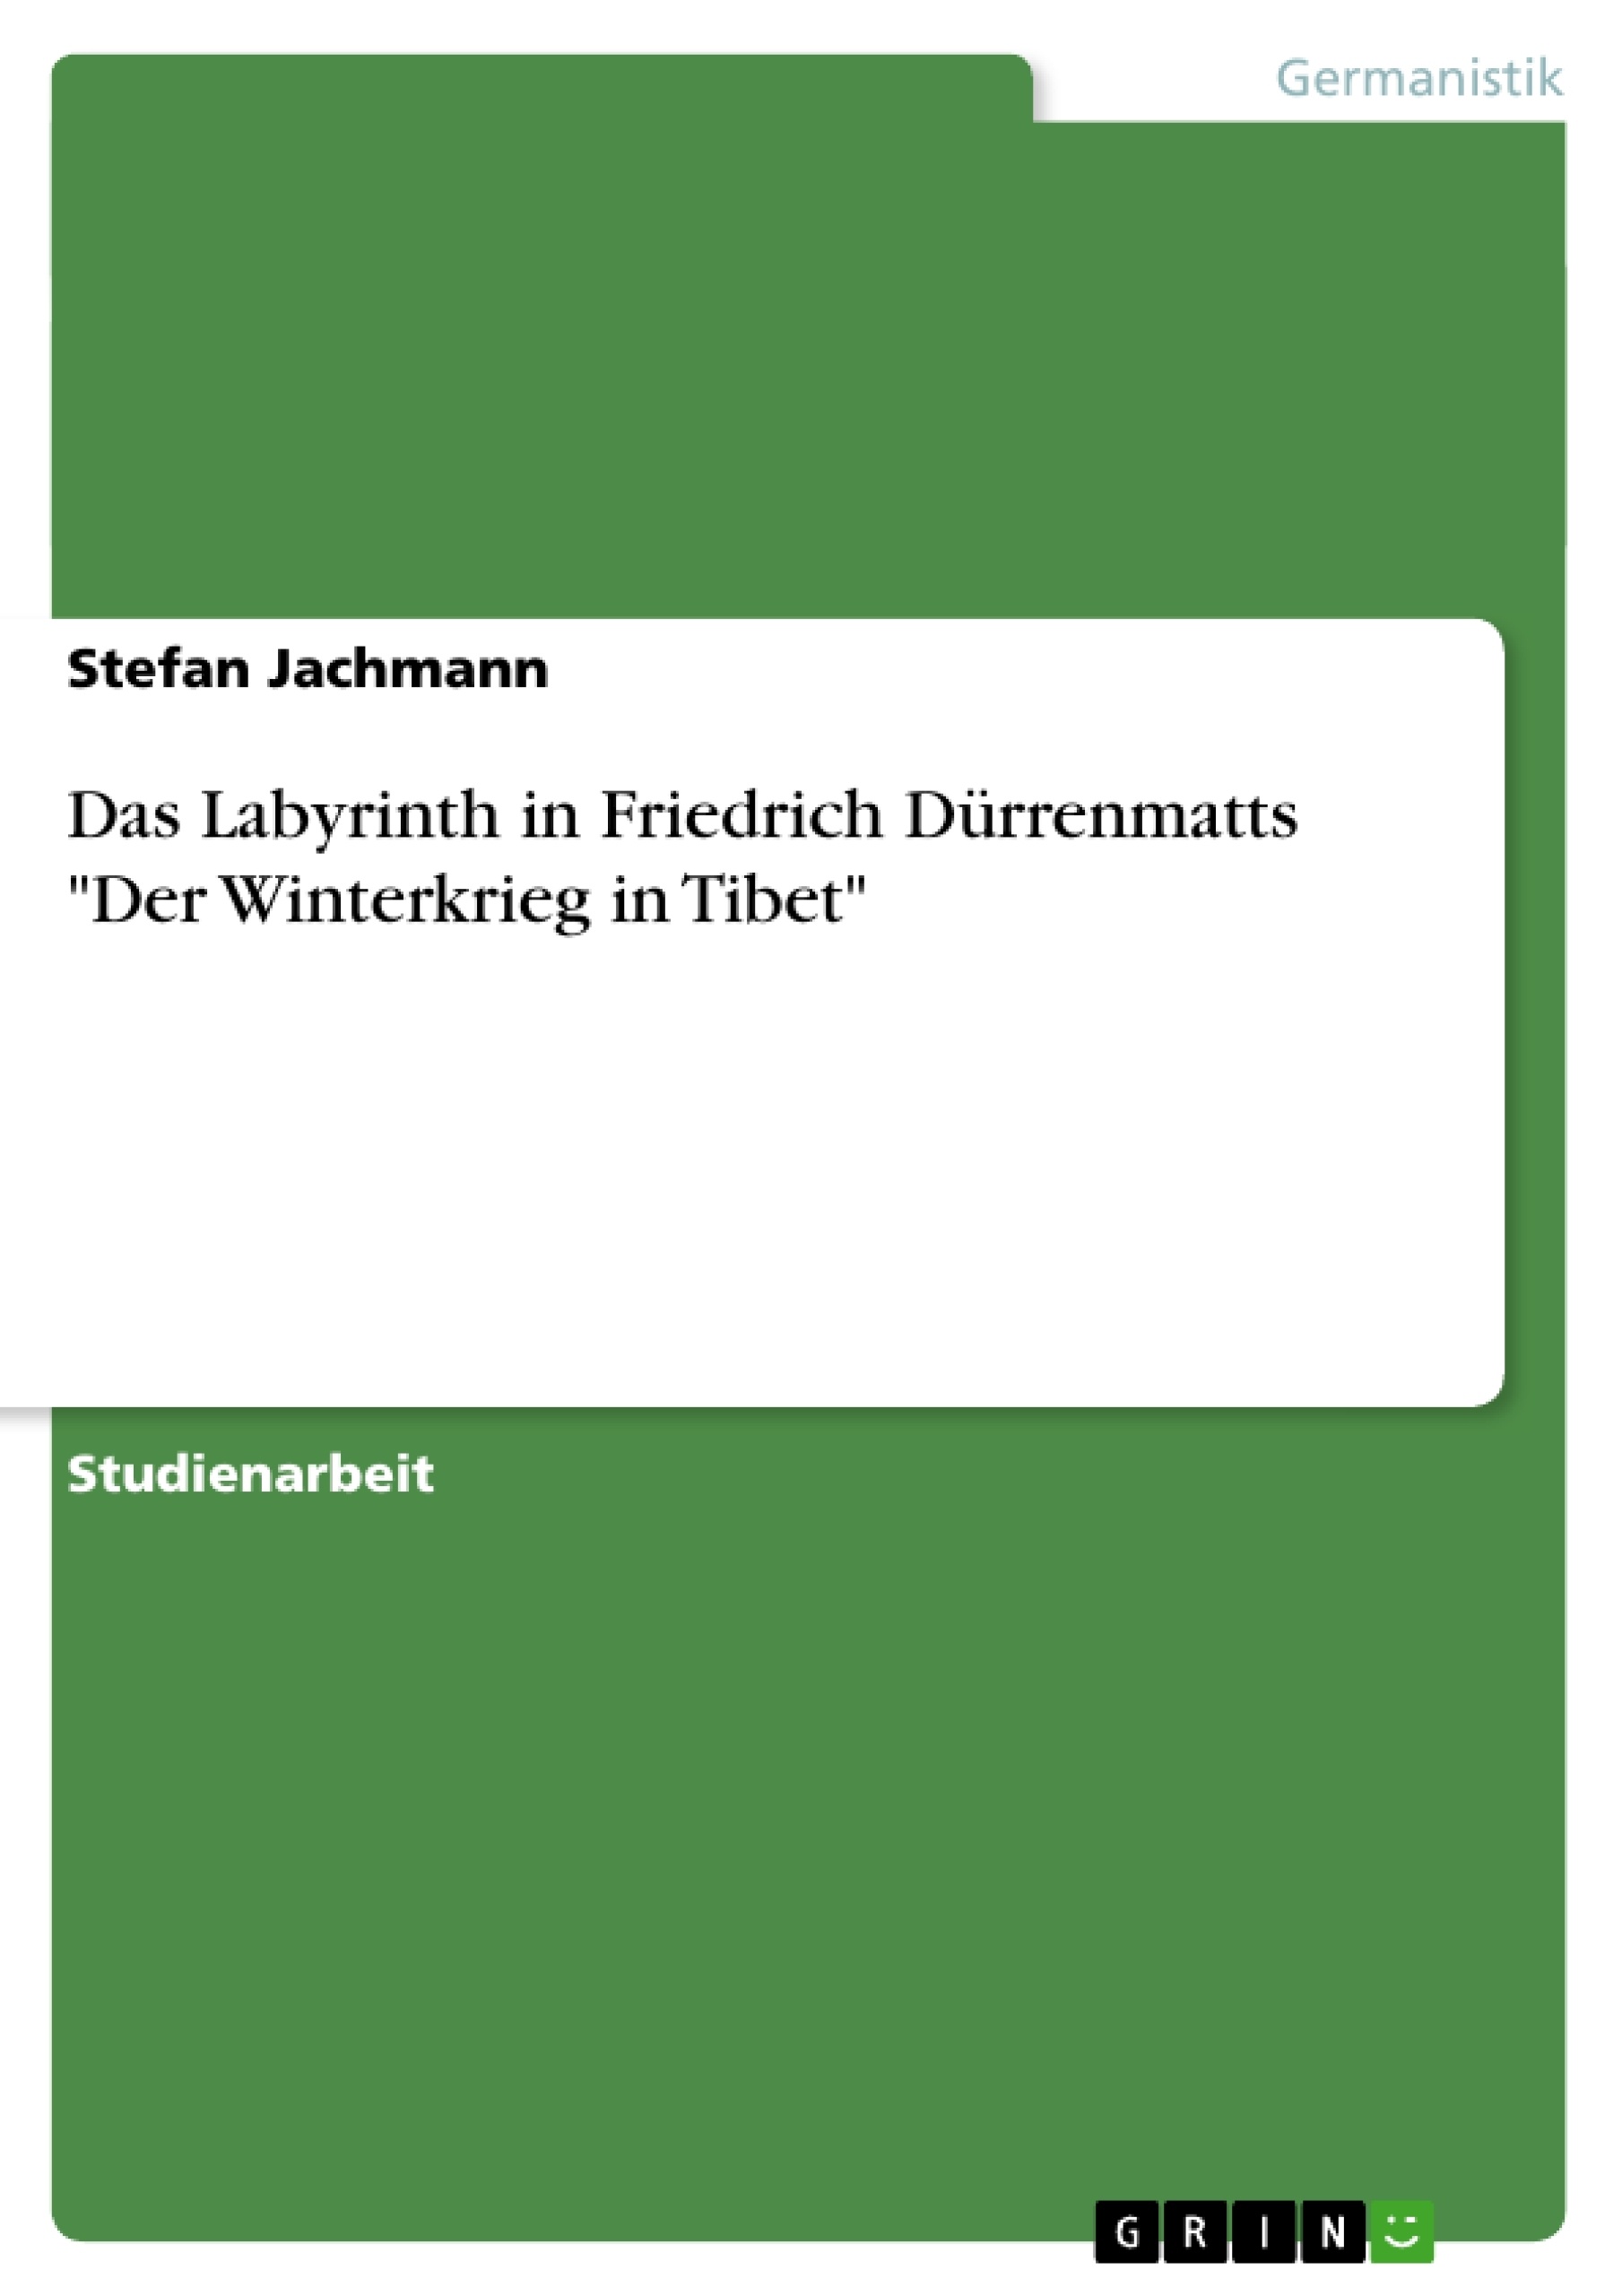 Título: Das Labyrinth in Friedrich Dürrenmatts "Der Winterkrieg in Tibet"